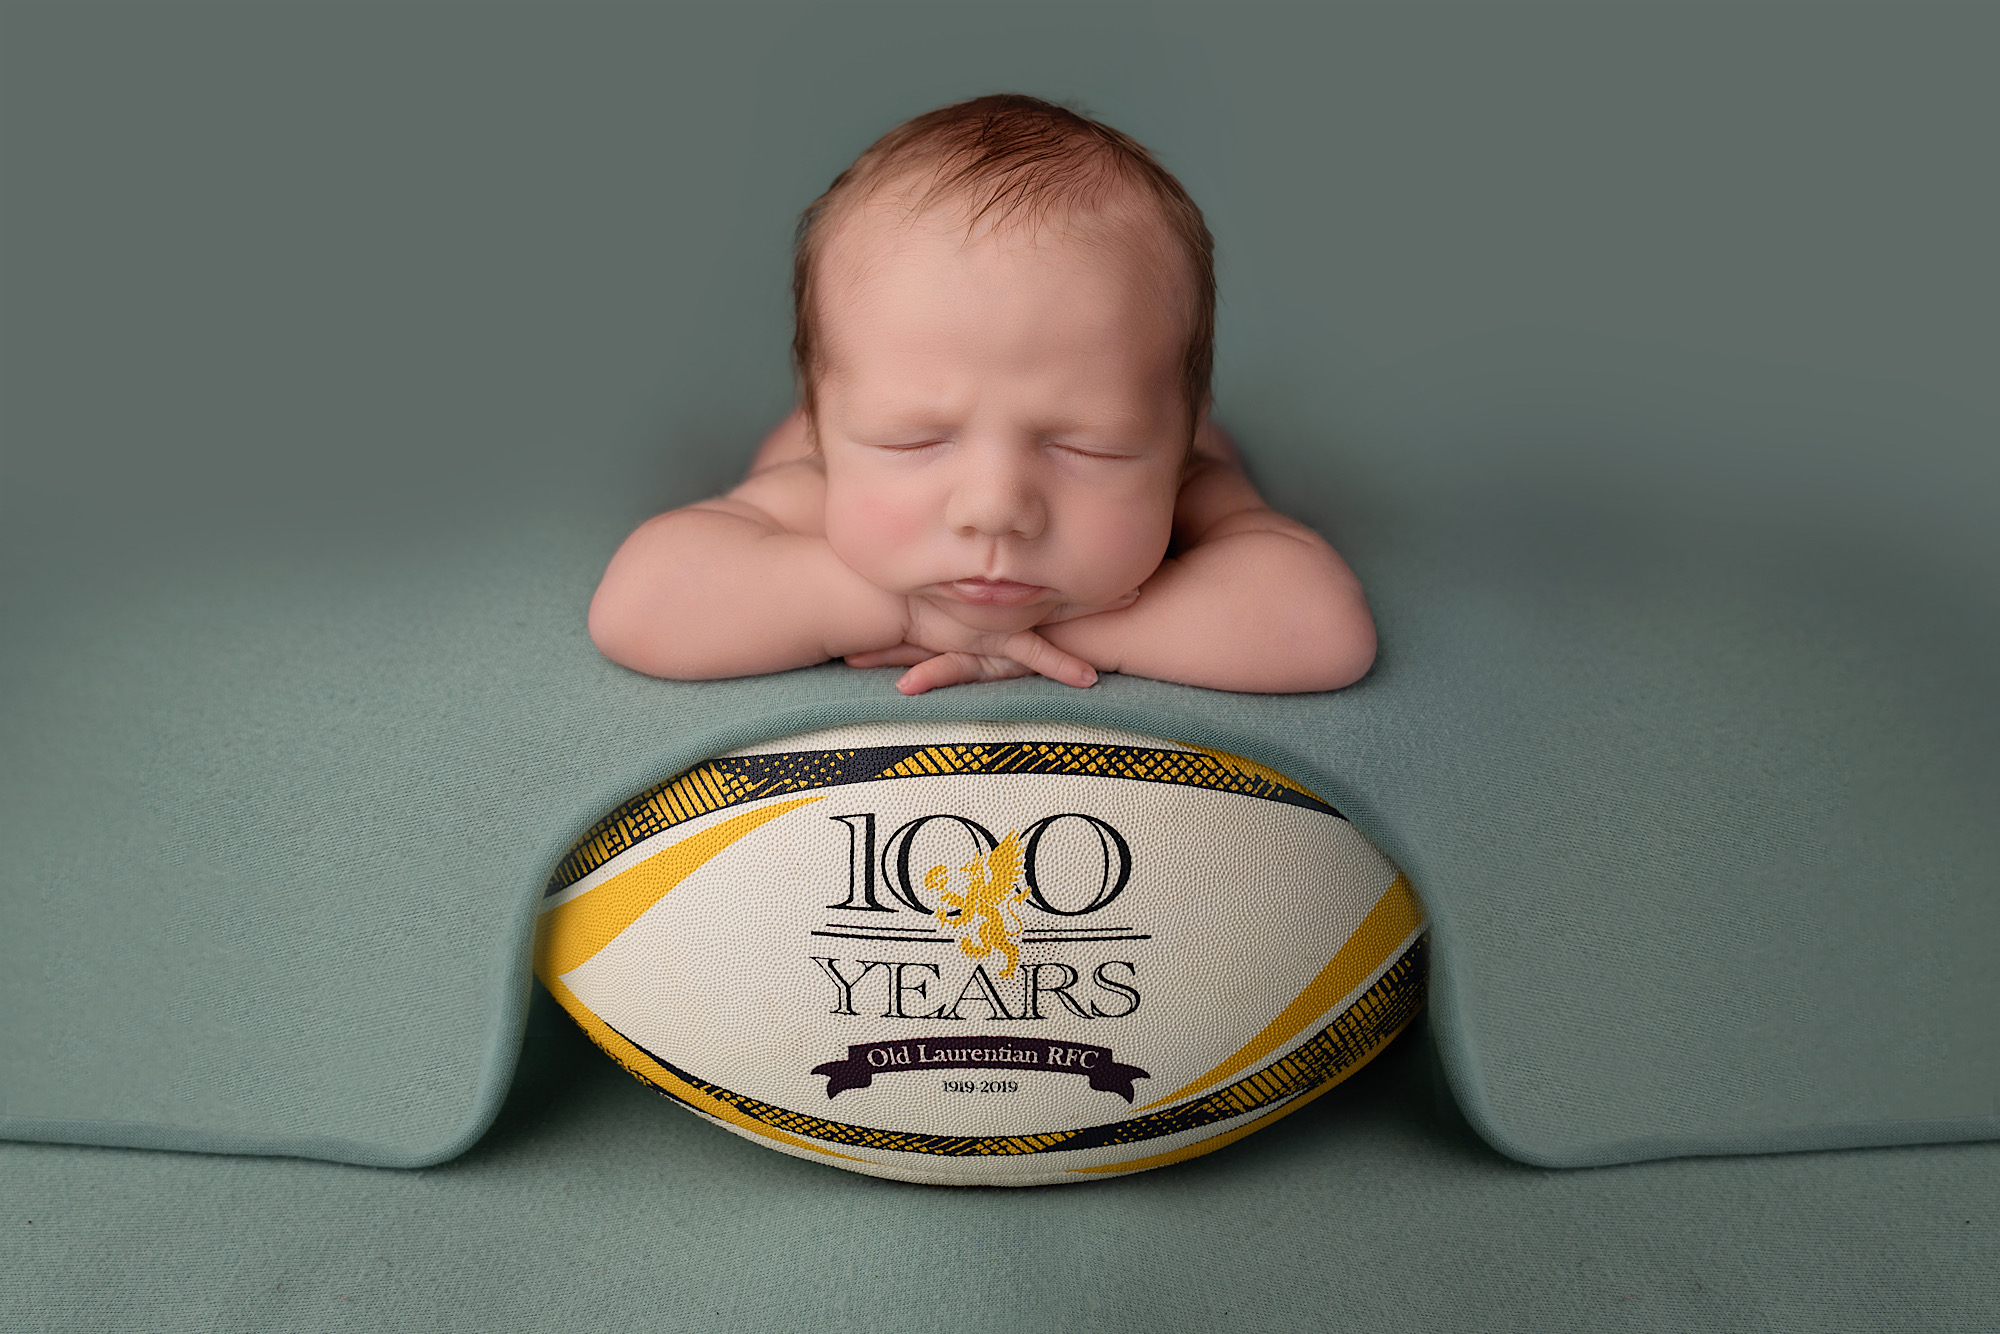 Newborn baby rugby